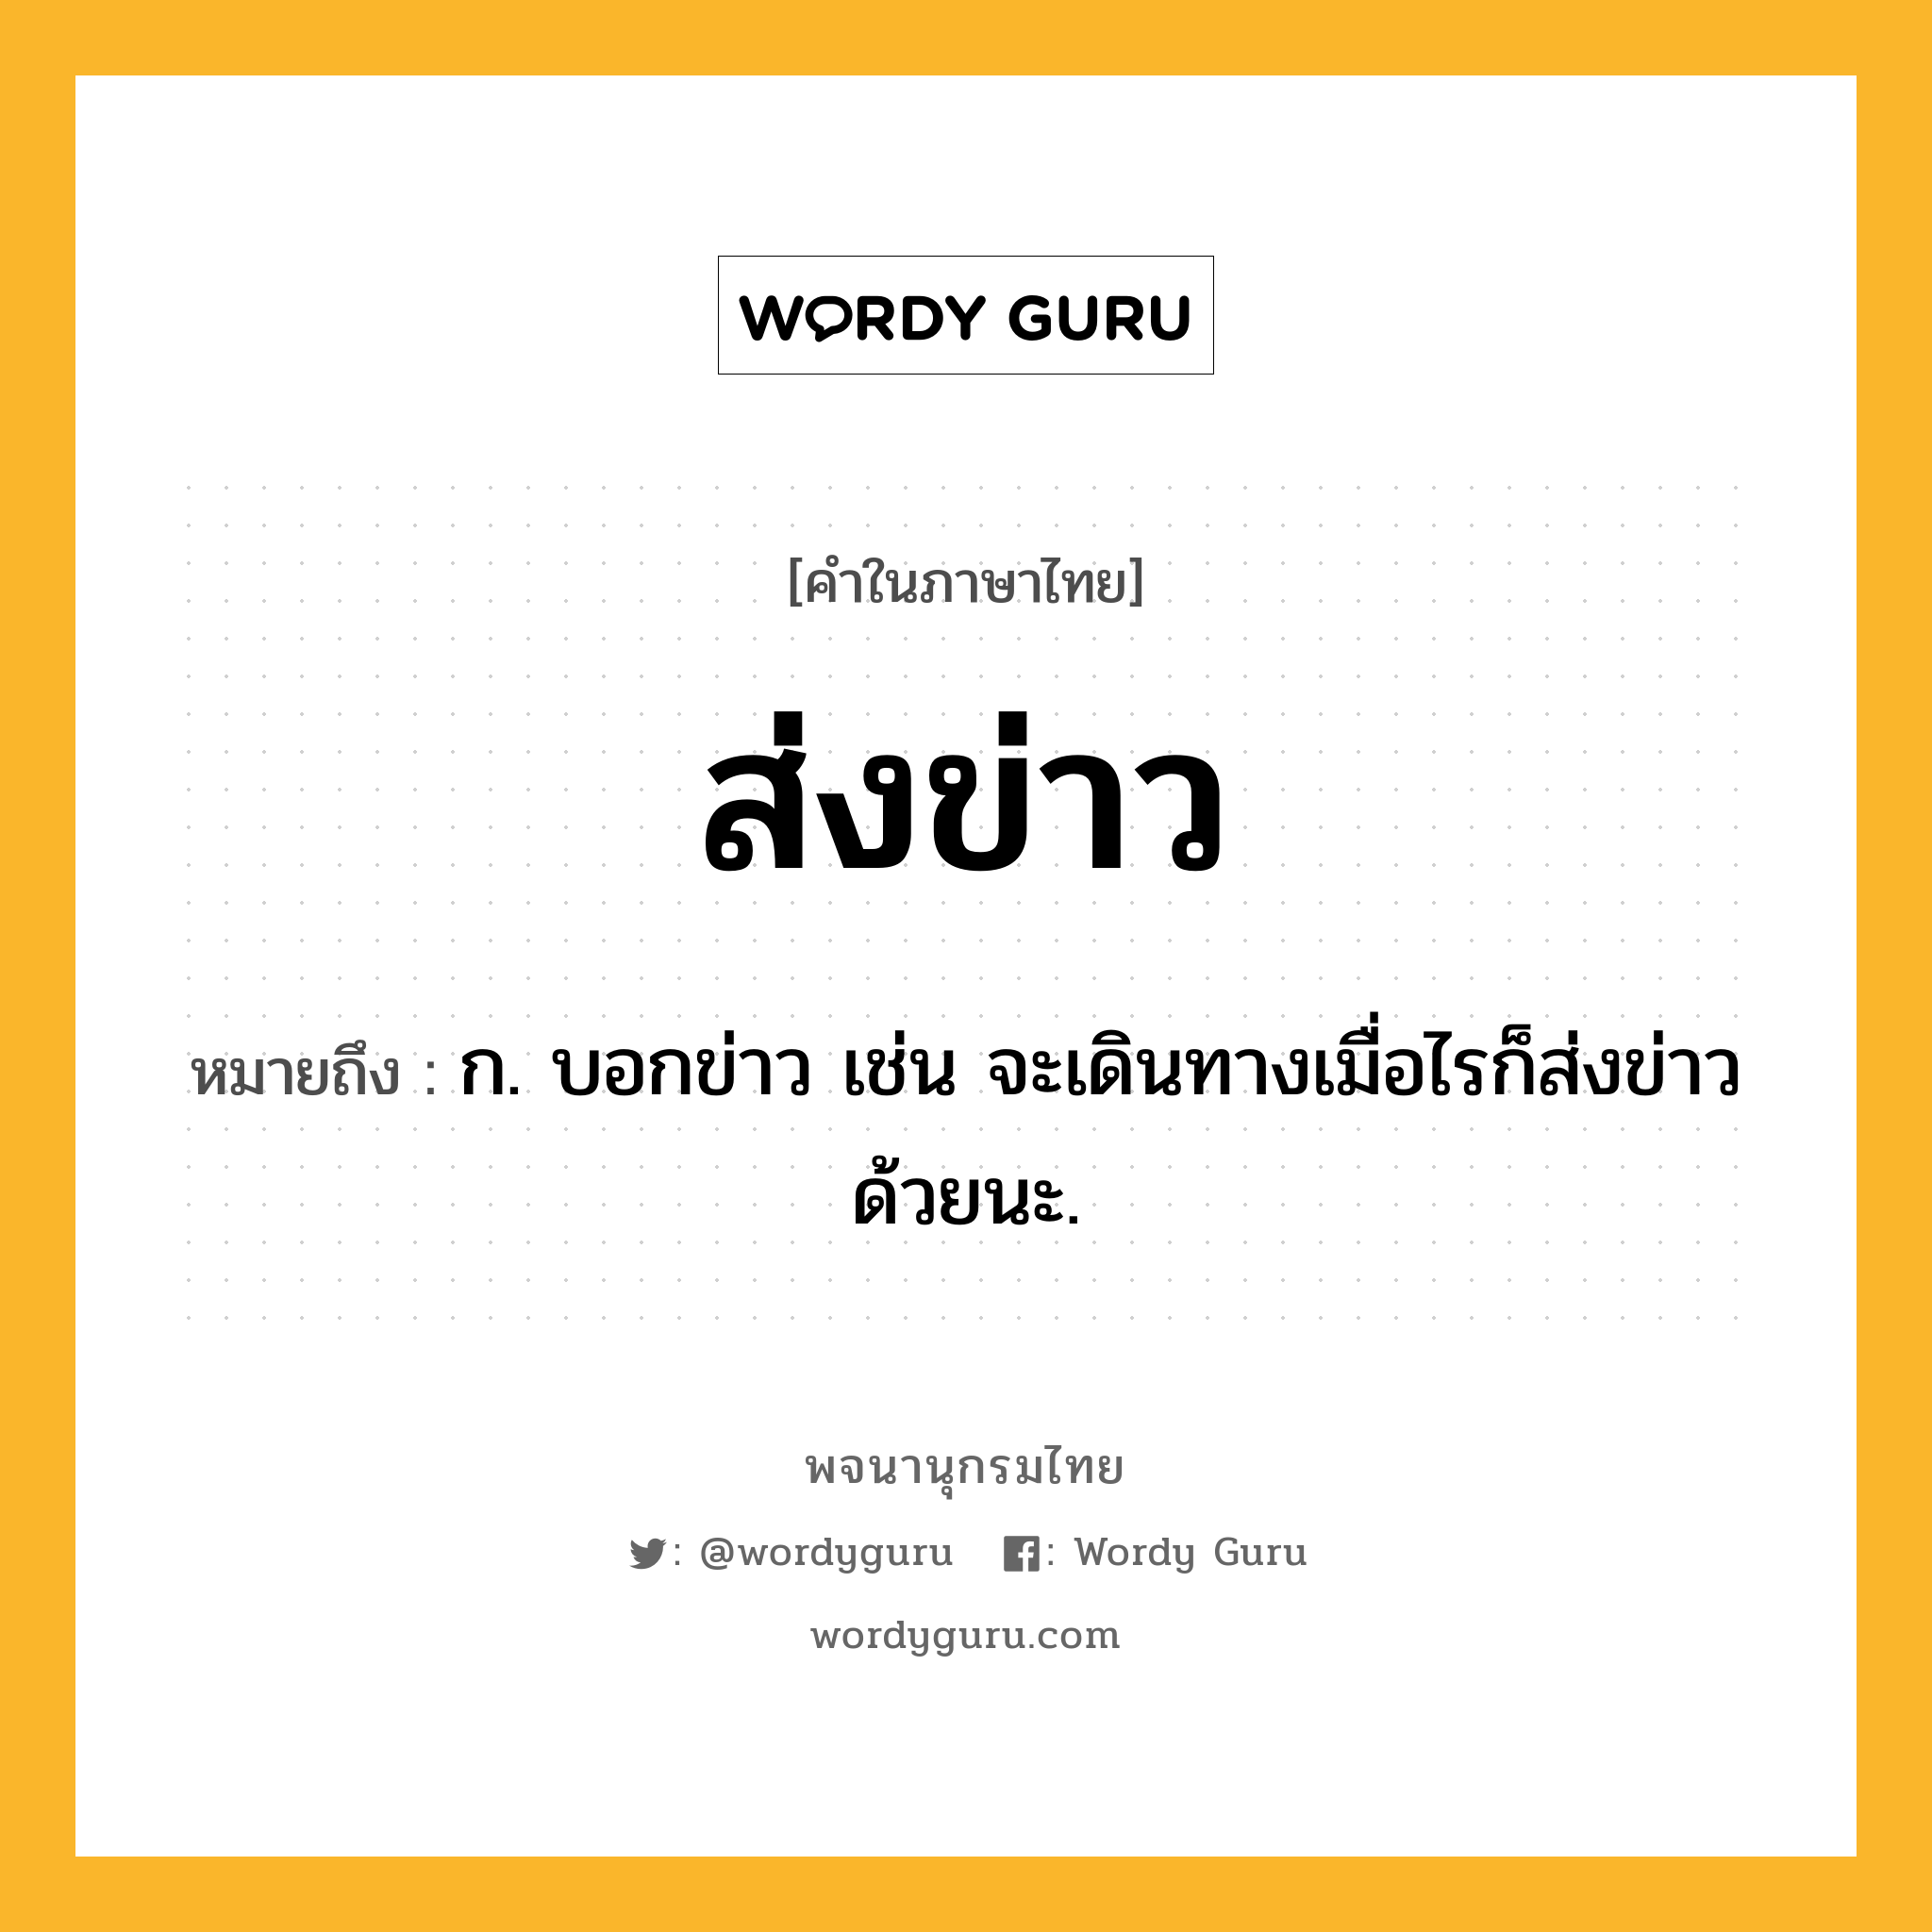 ส่งข่าว ความหมาย หมายถึงอะไร?, คำในภาษาไทย ส่งข่าว หมายถึง ก. บอกข่าว เช่น จะเดินทางเมื่อไรก็ส่งข่าวด้วยนะ.